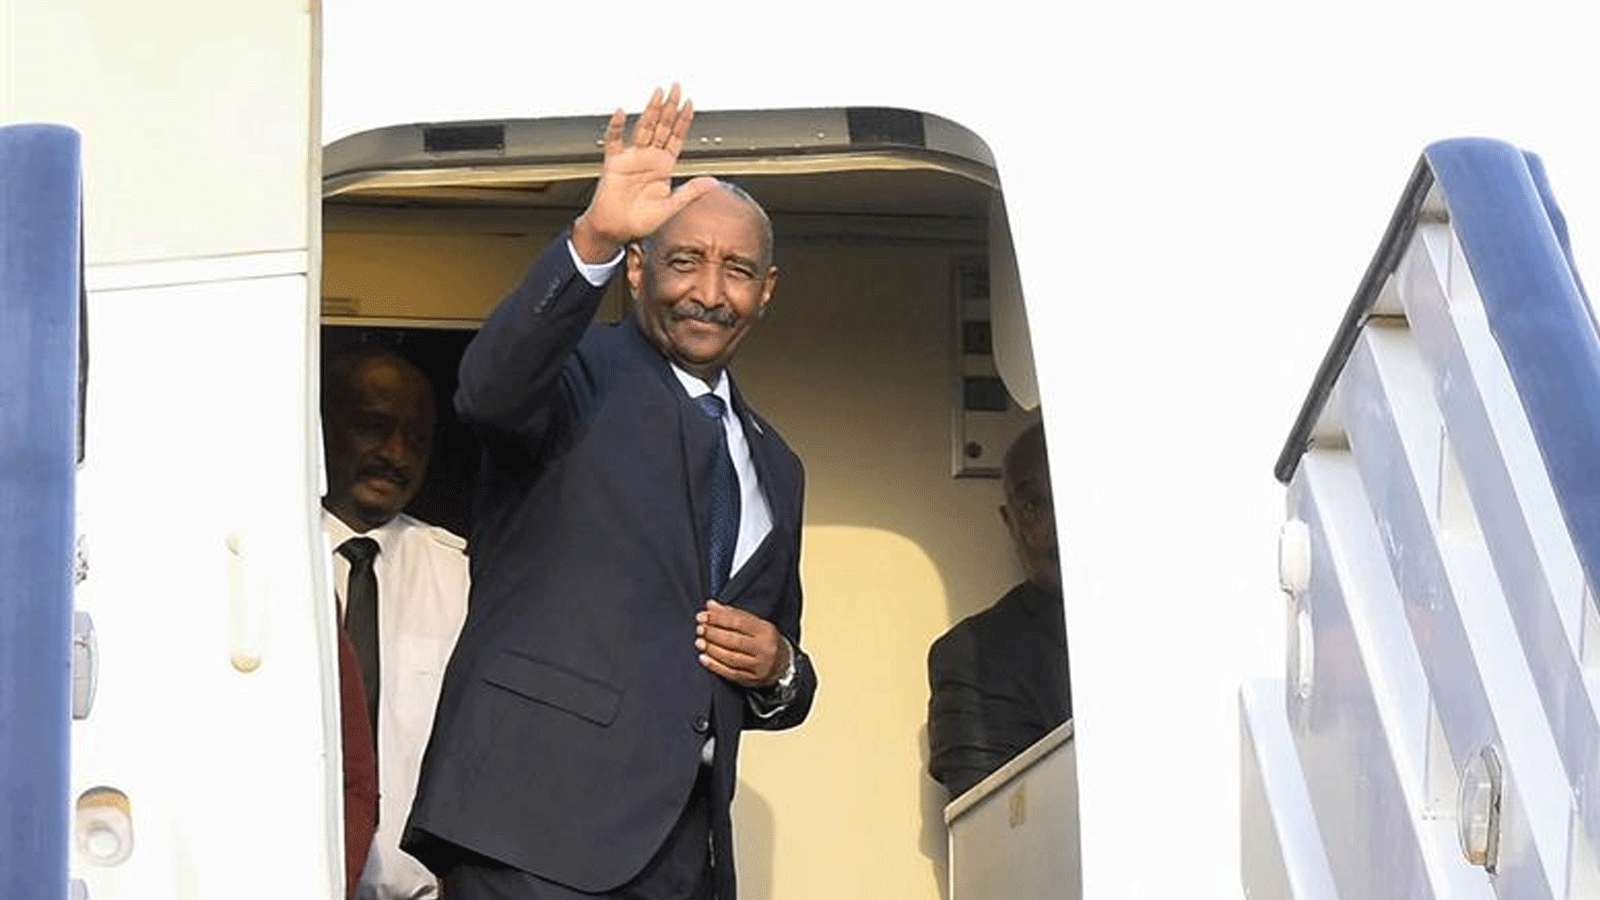 رئيس مجلس السيادة الانتقالي في السودان الفريق أول عبد الفتاح البرهان يصعد على متن طائرة بمطار بورتسودان متوجهاً إلى جنوب السودان في 4 ايلول\سبتمبر 2023